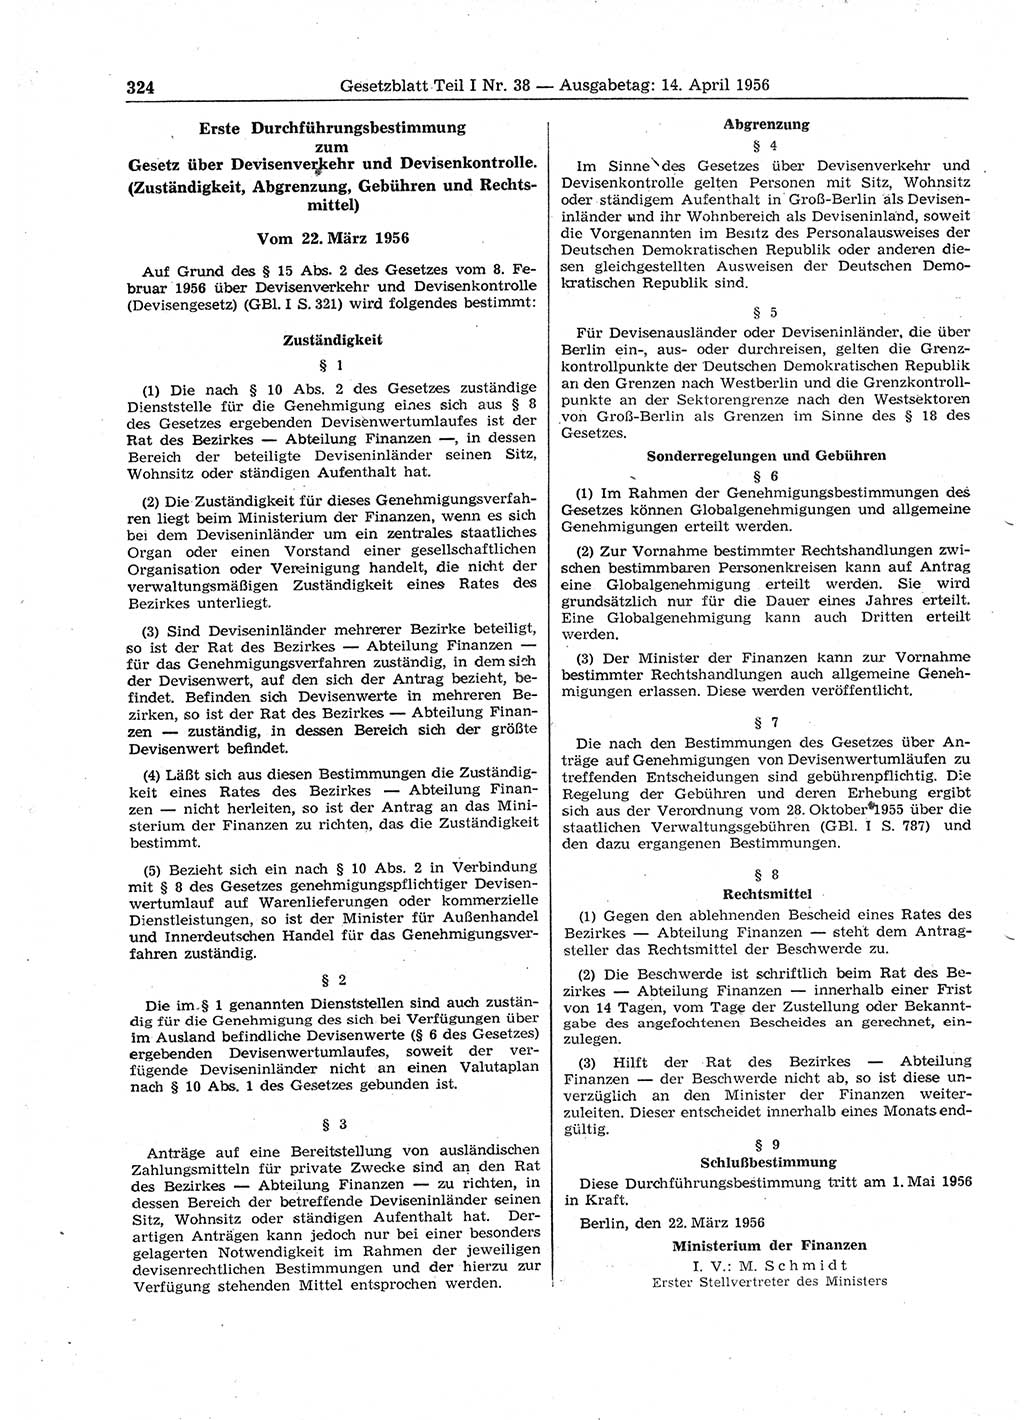 Gesetzblatt (GBl.) der Deutschen Demokratischen Republik (DDR) Teil Ⅰ 1956, Seite 324 (GBl. DDR Ⅰ 1956, S. 324)